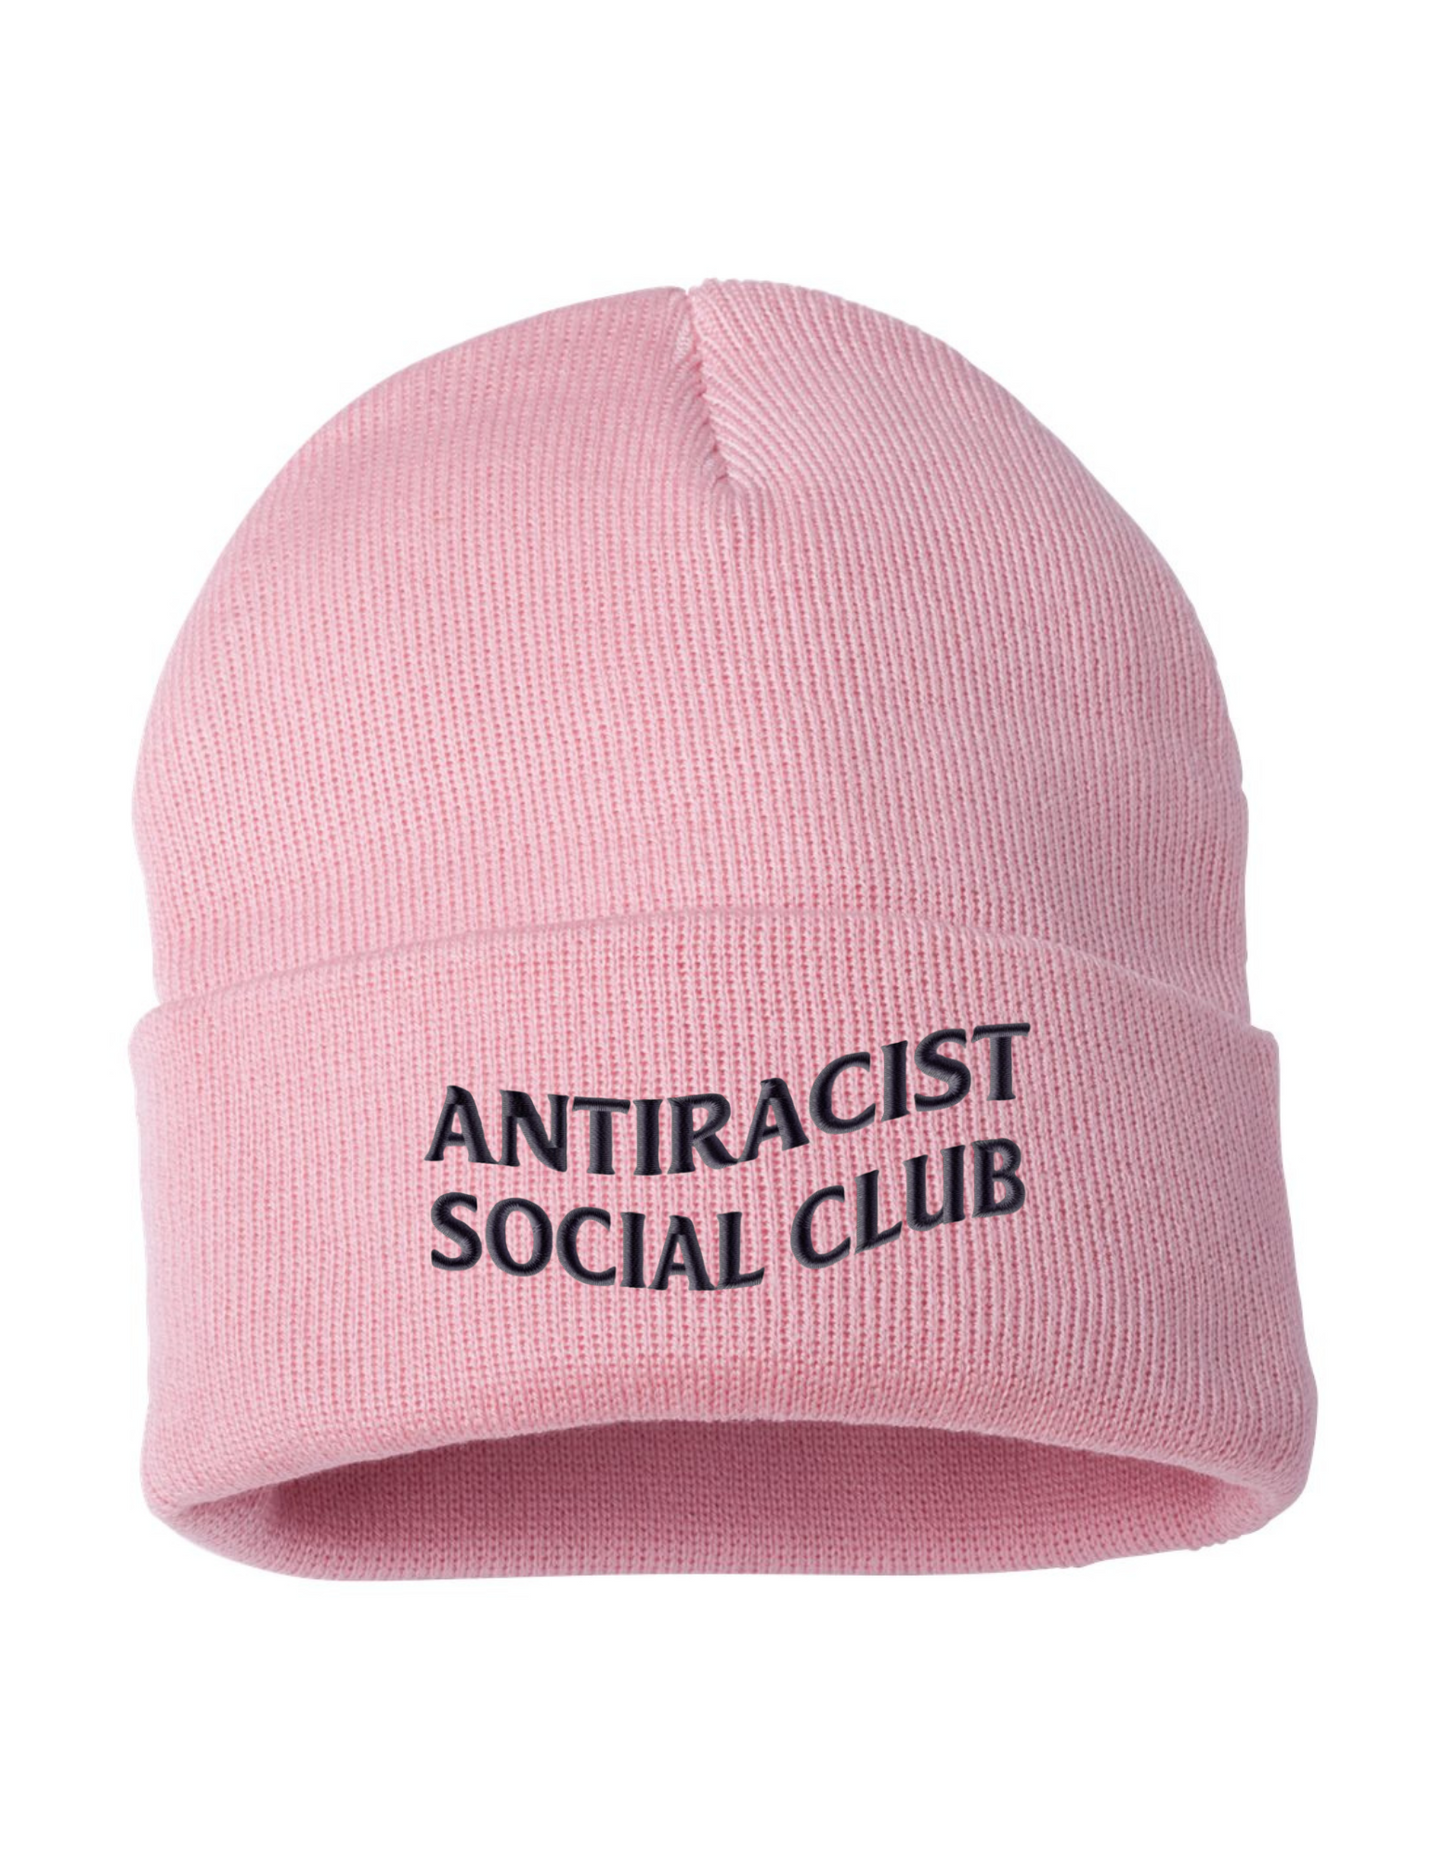 Antiracist Social Club Beanie